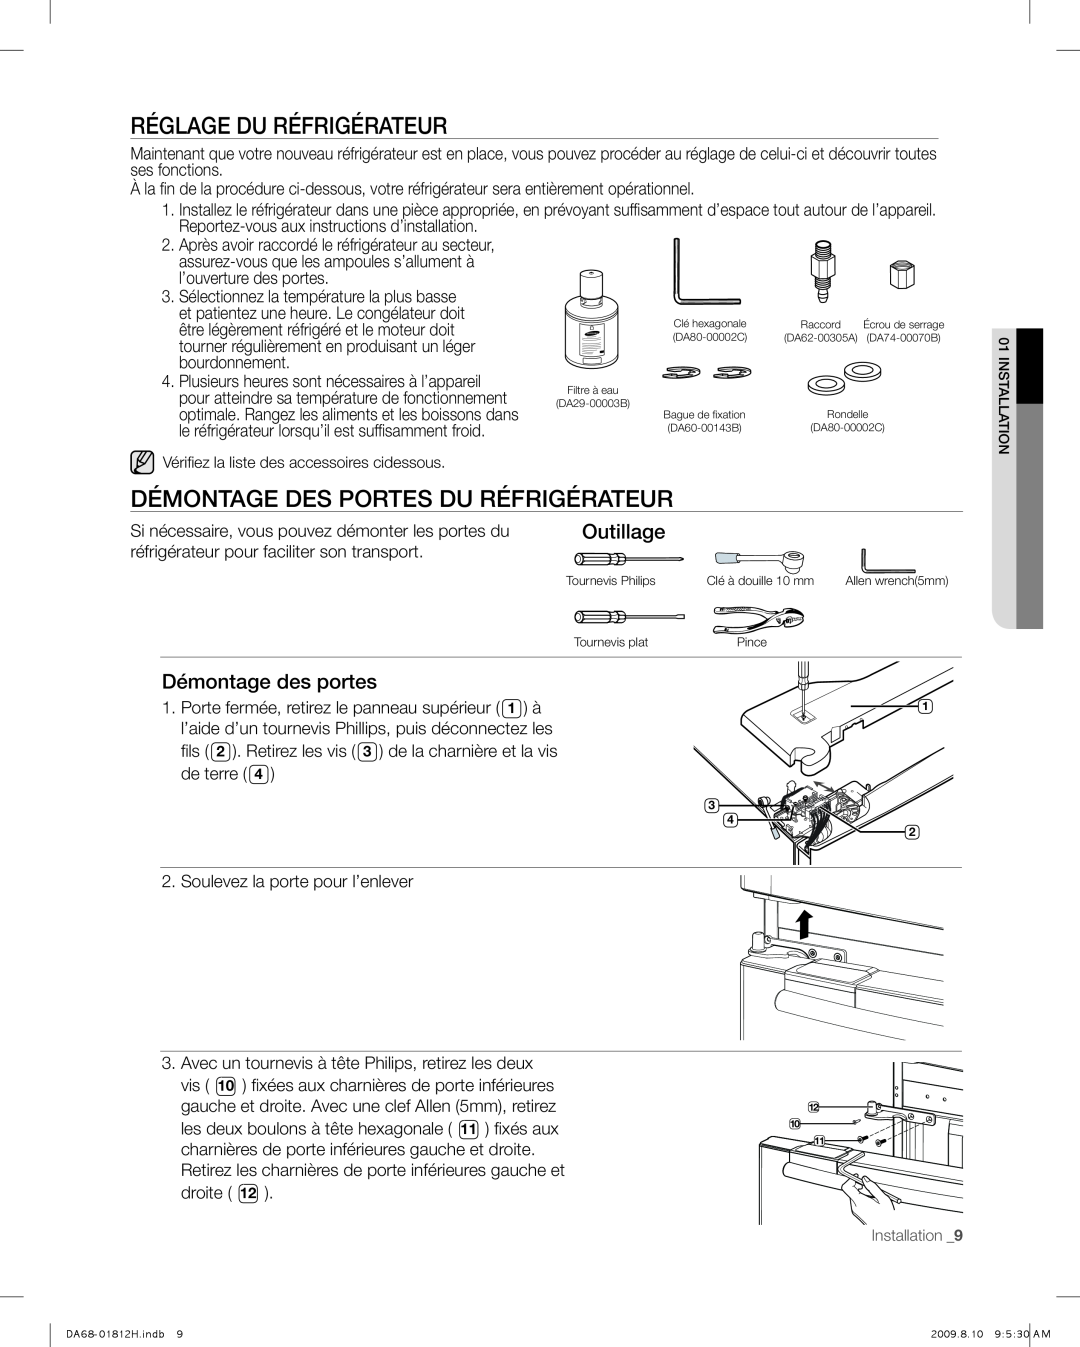 Samsung RF263 user manual Réglage Du Réfrigérateur, Démontage Des Portes Du Réfrigérateur, Outillage, Démontage des portes 